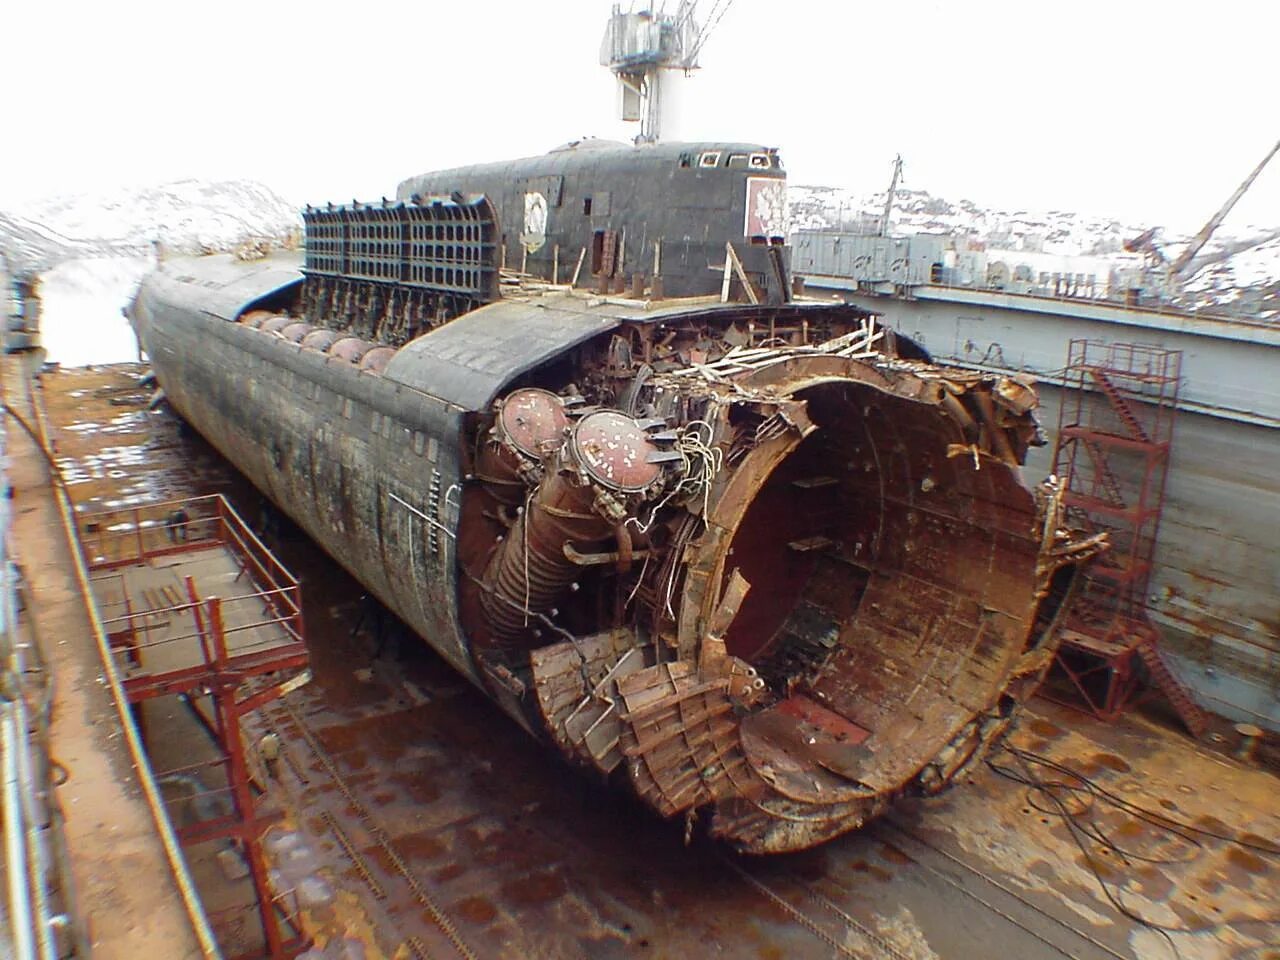 Recovered us. Подводная лодка к-141 «Курск». Курск 141 атомная подводная лодка. К-141 «Курск». 12 Августа 2000 Курск подводная лодка.